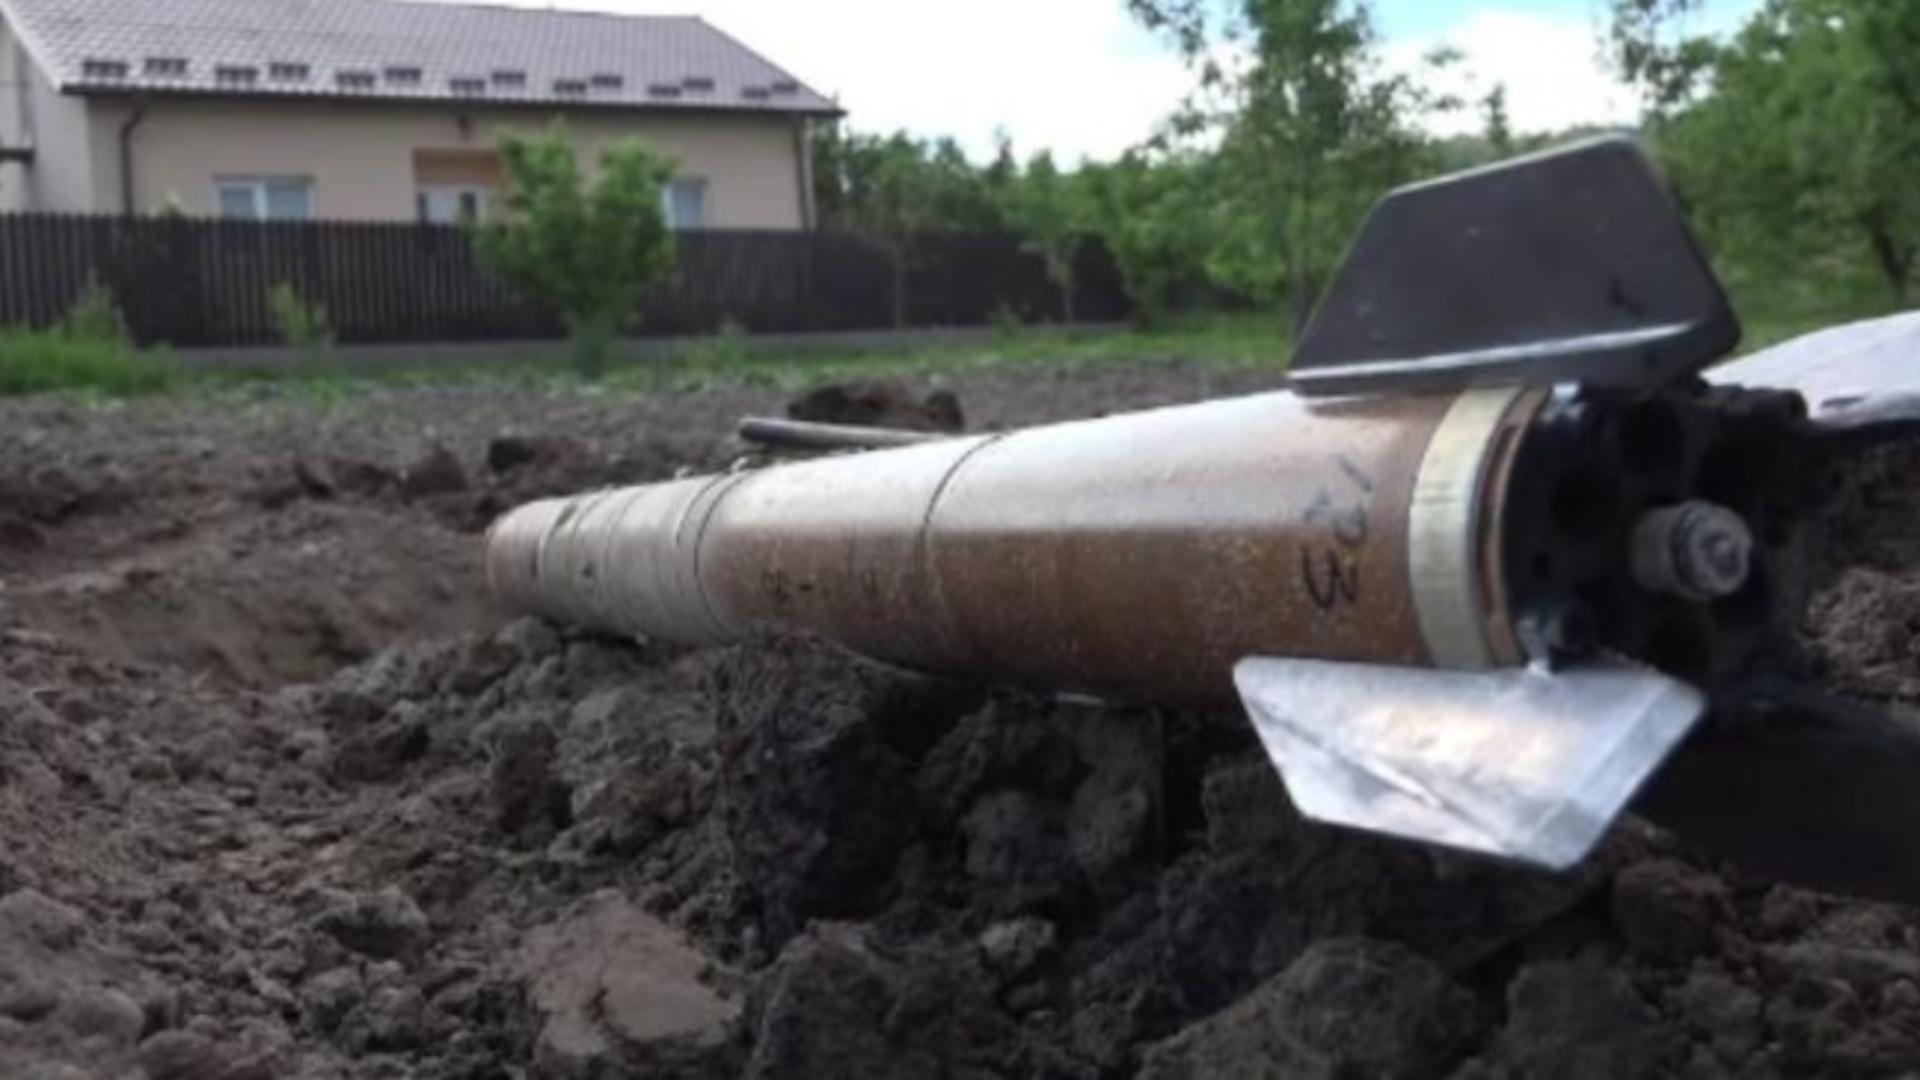 Casă lovită de o rachetă antigrindină în comuna Valea Călugărească - Intervenția pompierilor, cerută de proprietar - Care e motivul